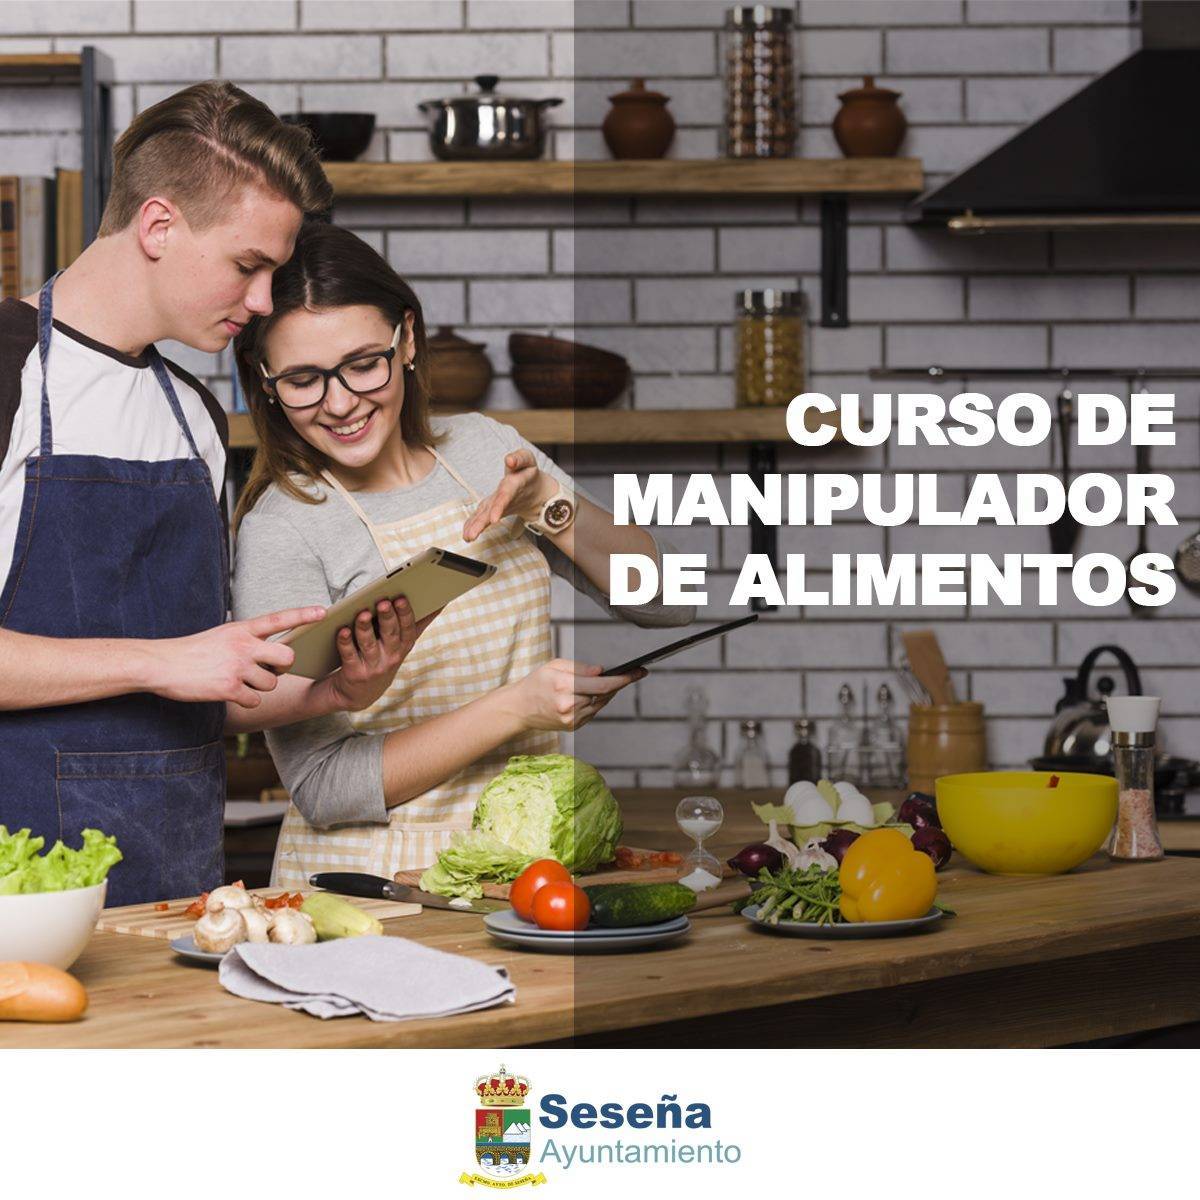 Curso de manipulador de alimentos (2020) - Seseña (Toledo)